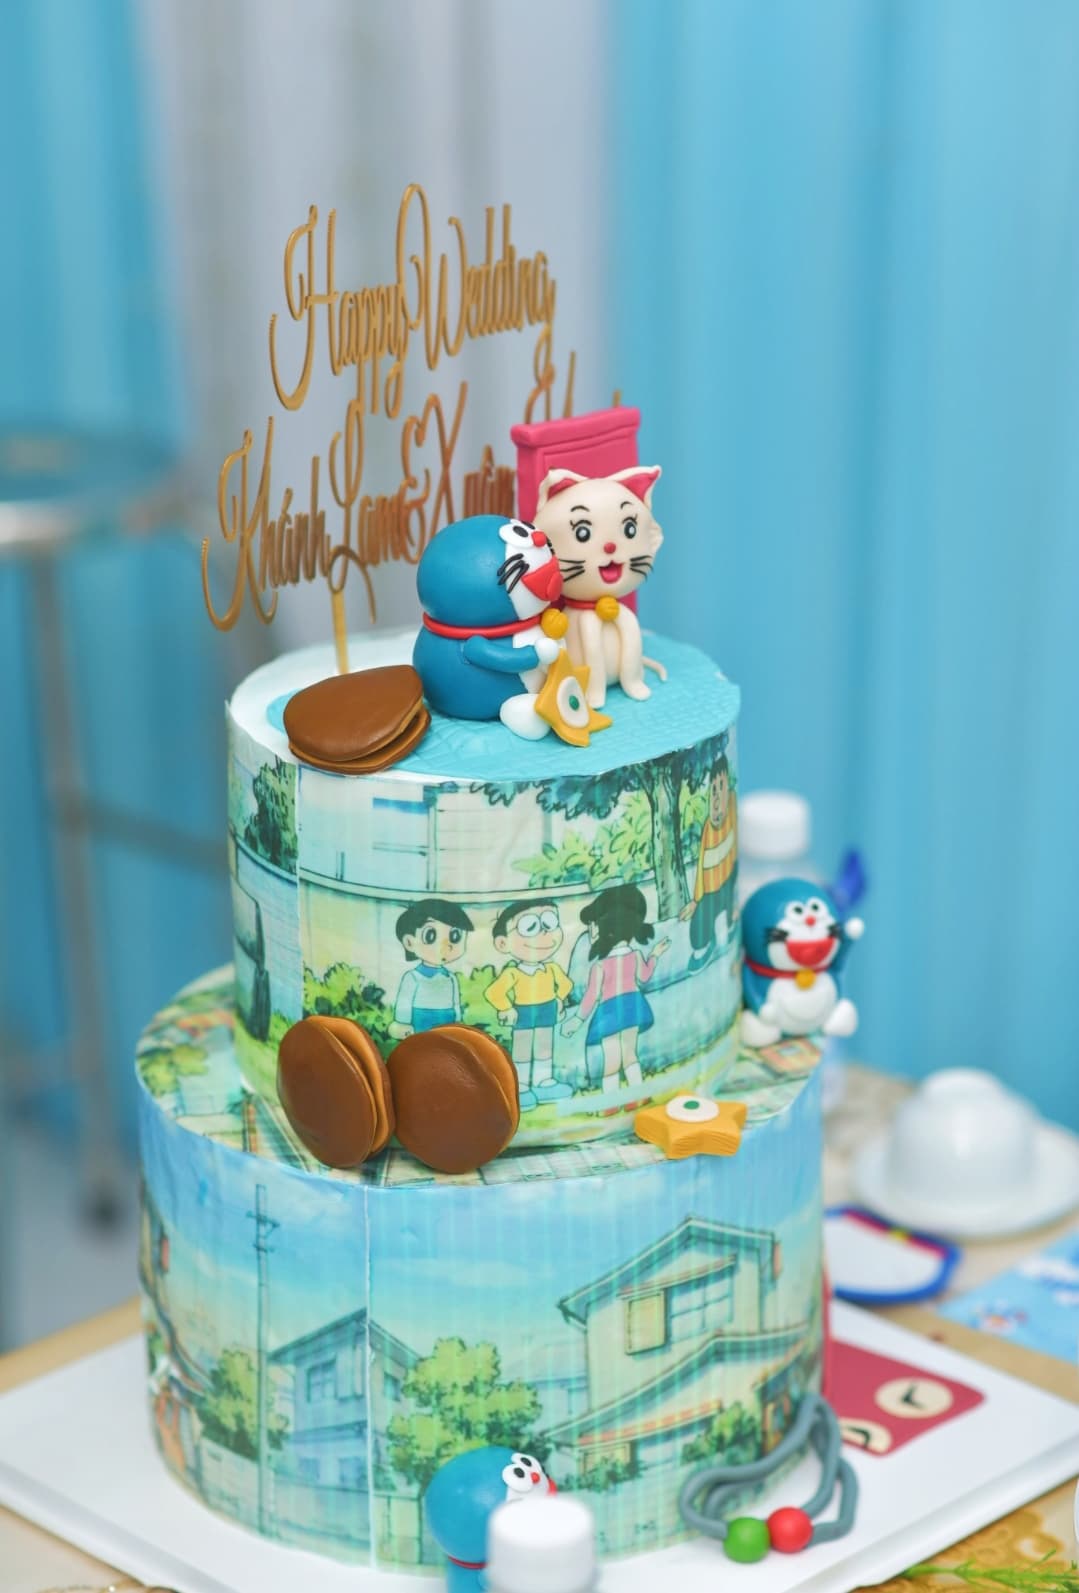 Trang Trí ăn hỏi Doraemon, một ý tưởng đầy mới lạ và đáng yêu. Hình ảnh đầy màu sắc sẽ làm cho bất cứ ai cũng muốn tổ chức một lễ cưới như thế. Hãy cùng nhấn mạnh những chi tiết hoạt hình dễ thương sẽ xóa tan mọi căng thẳng trong lòng bạn nhé.